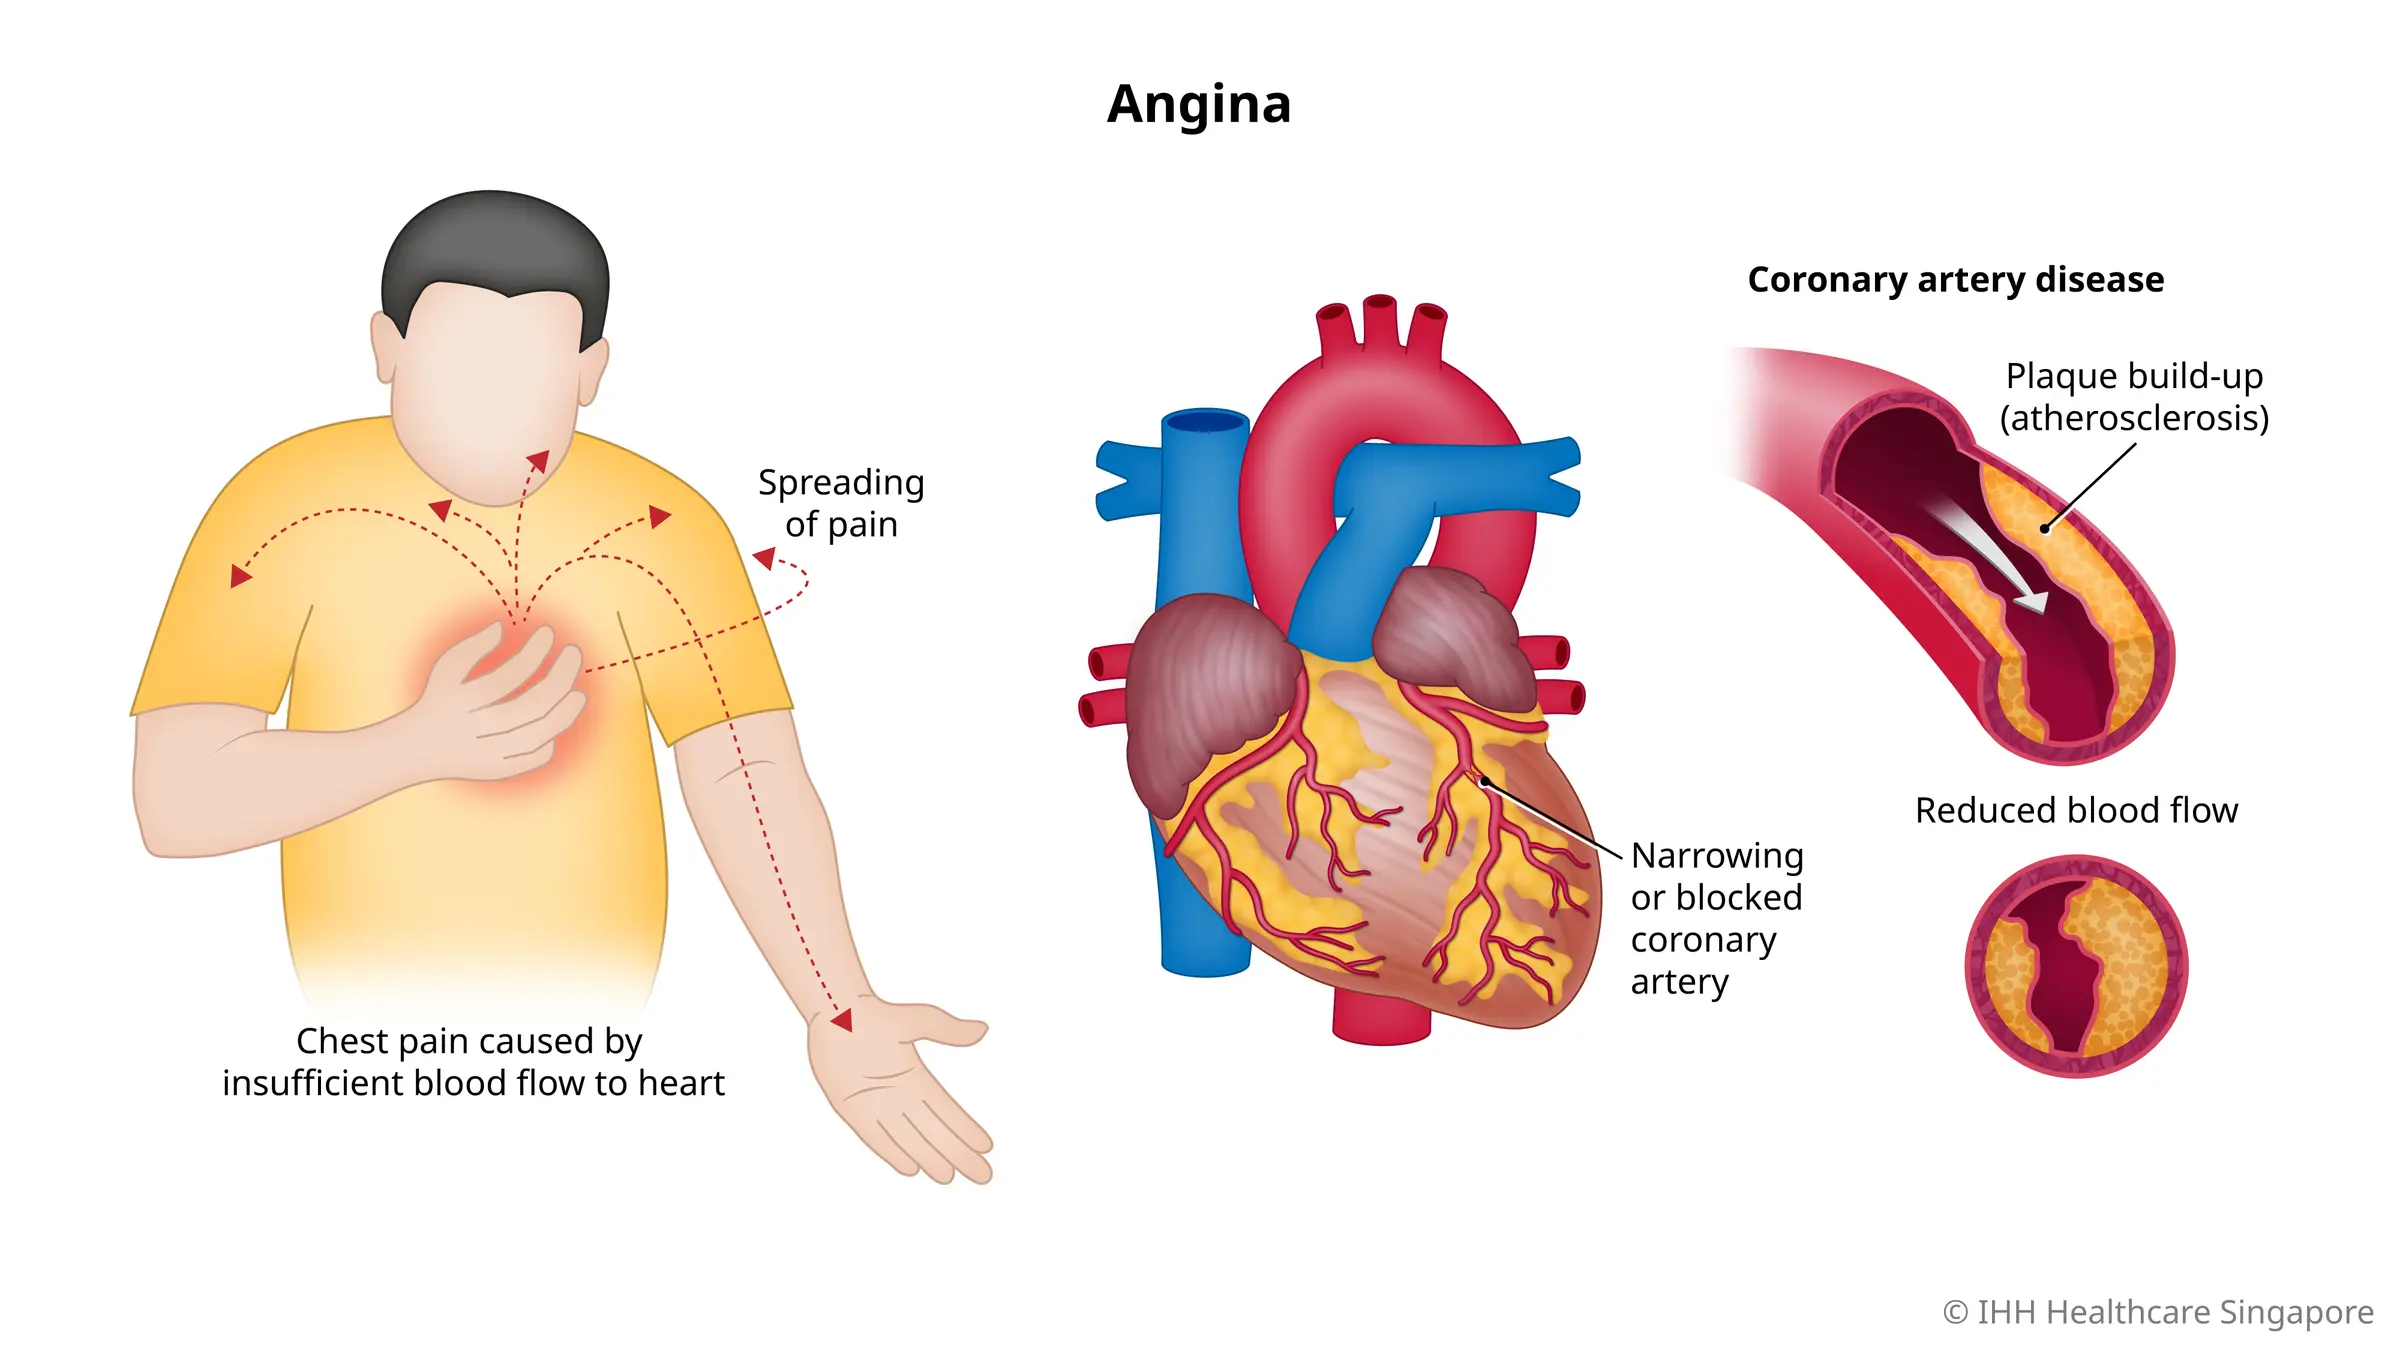 angina (nyeri dada) terjadi jika aliran darah yang tidak memadai ke jantung akibat menyempit atau tersumbat arteri koroner.